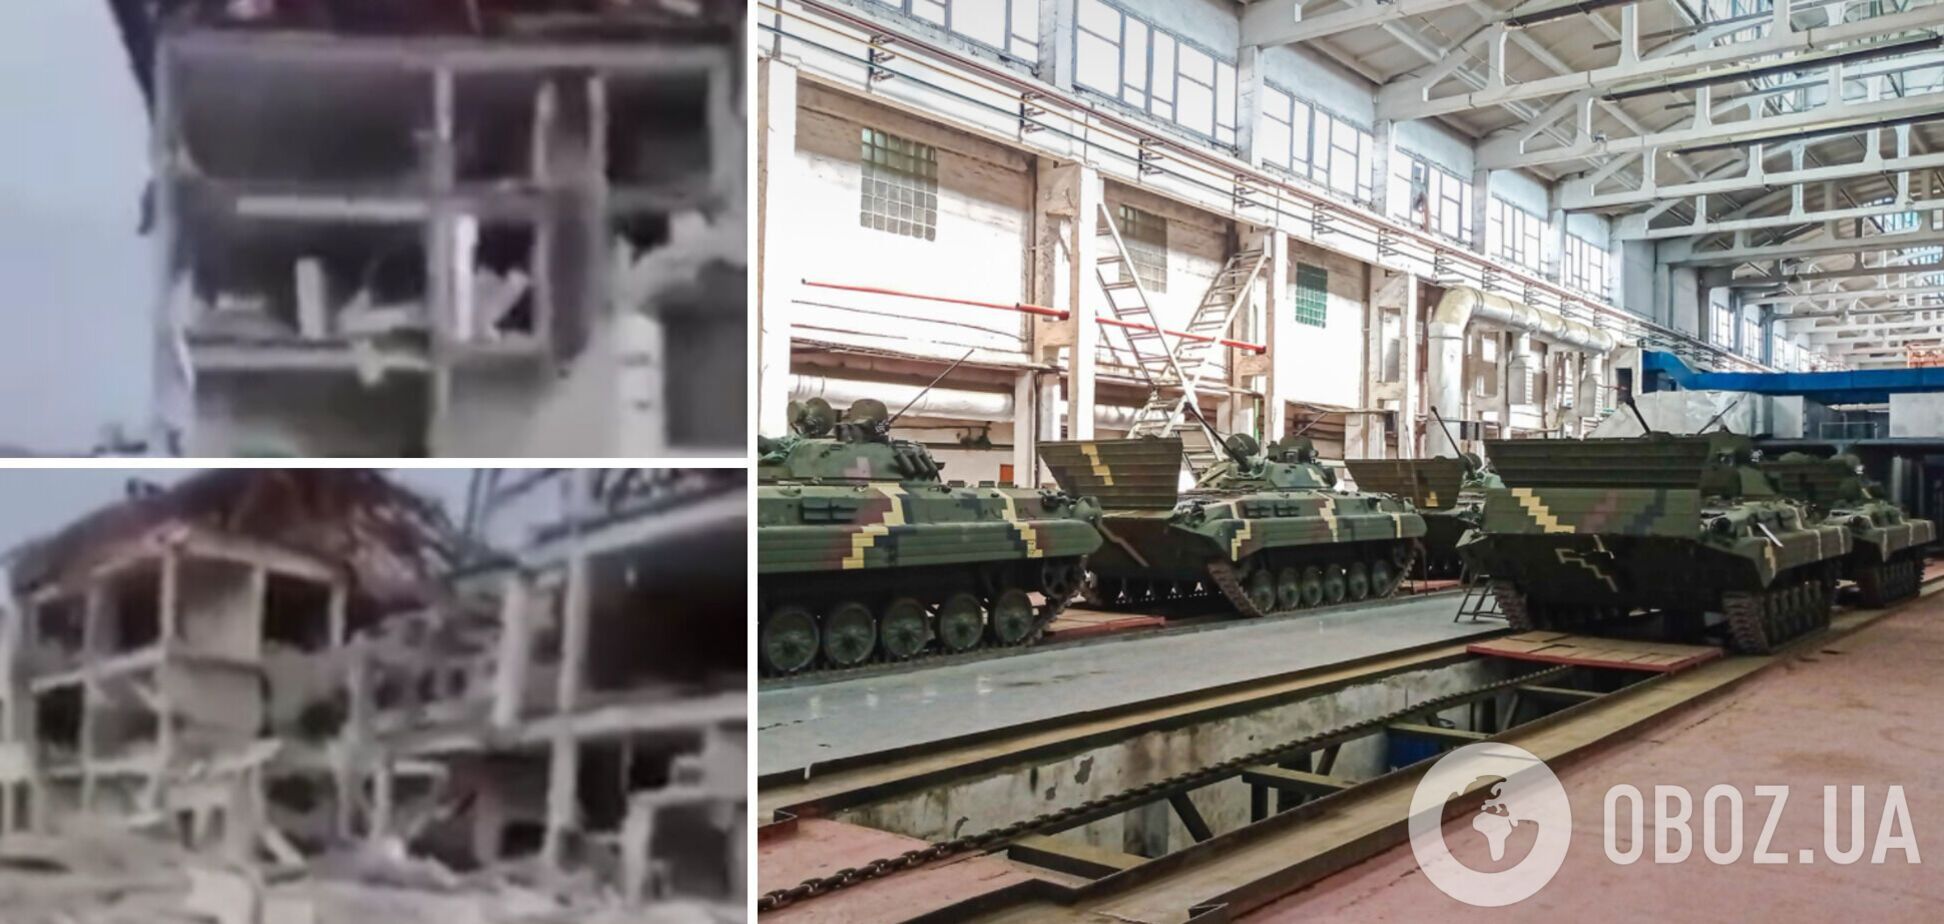 Груды камней и металла: на видео показали последствия бомбежки Житомирского бронетанкового завода